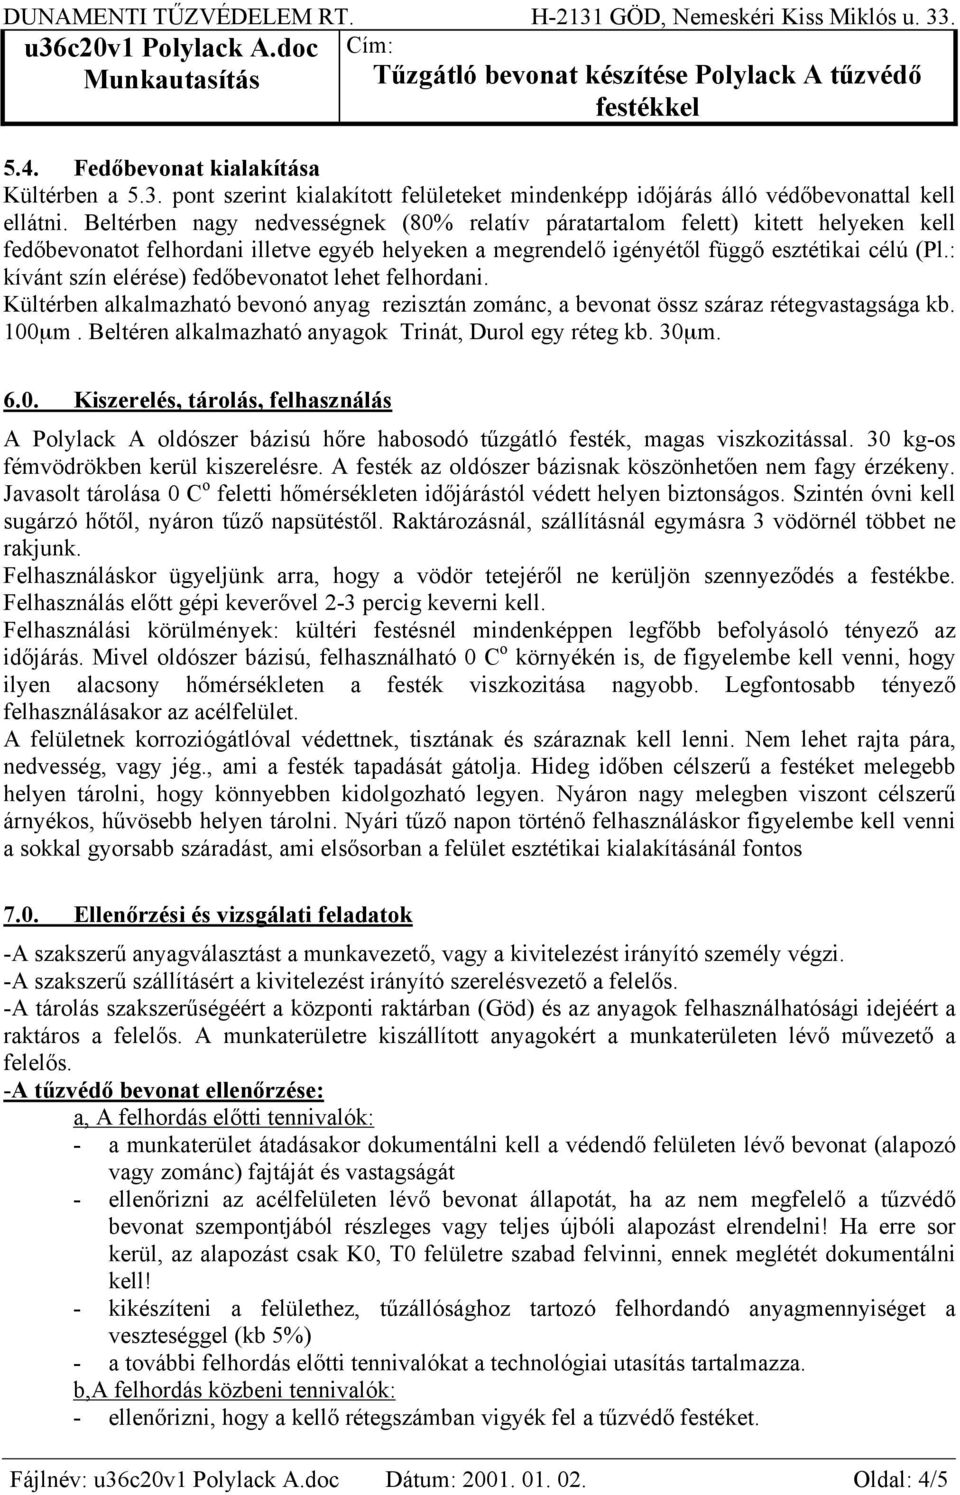 Munkautasítás Tűzgátló bevonat készítése Polylack A tűzvédő festékkel - PDF  Ingyenes letöltés